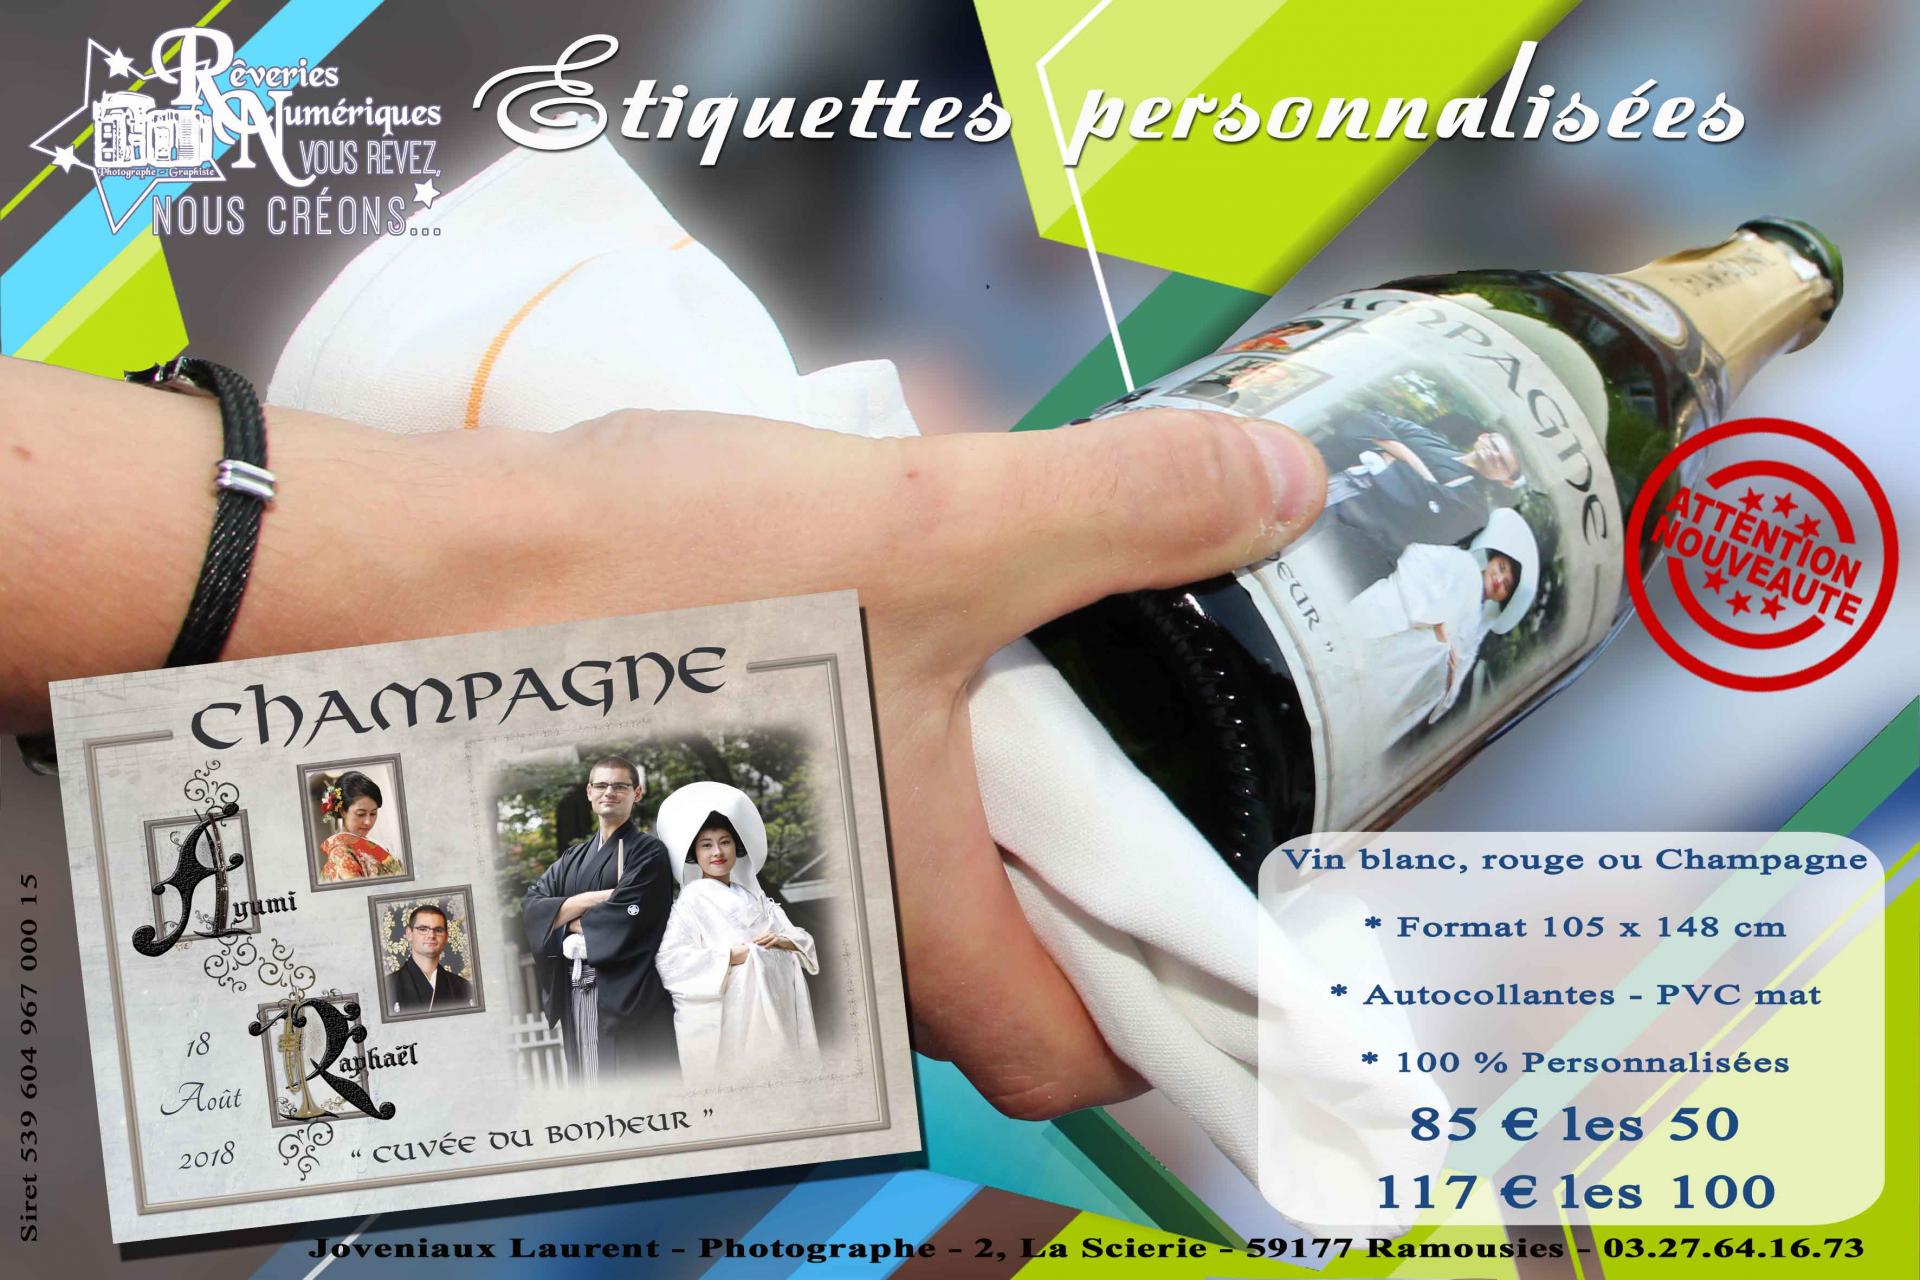 Etiquettes champagne vin personnalisees mariage repas joveniaux studio reveries numeriques